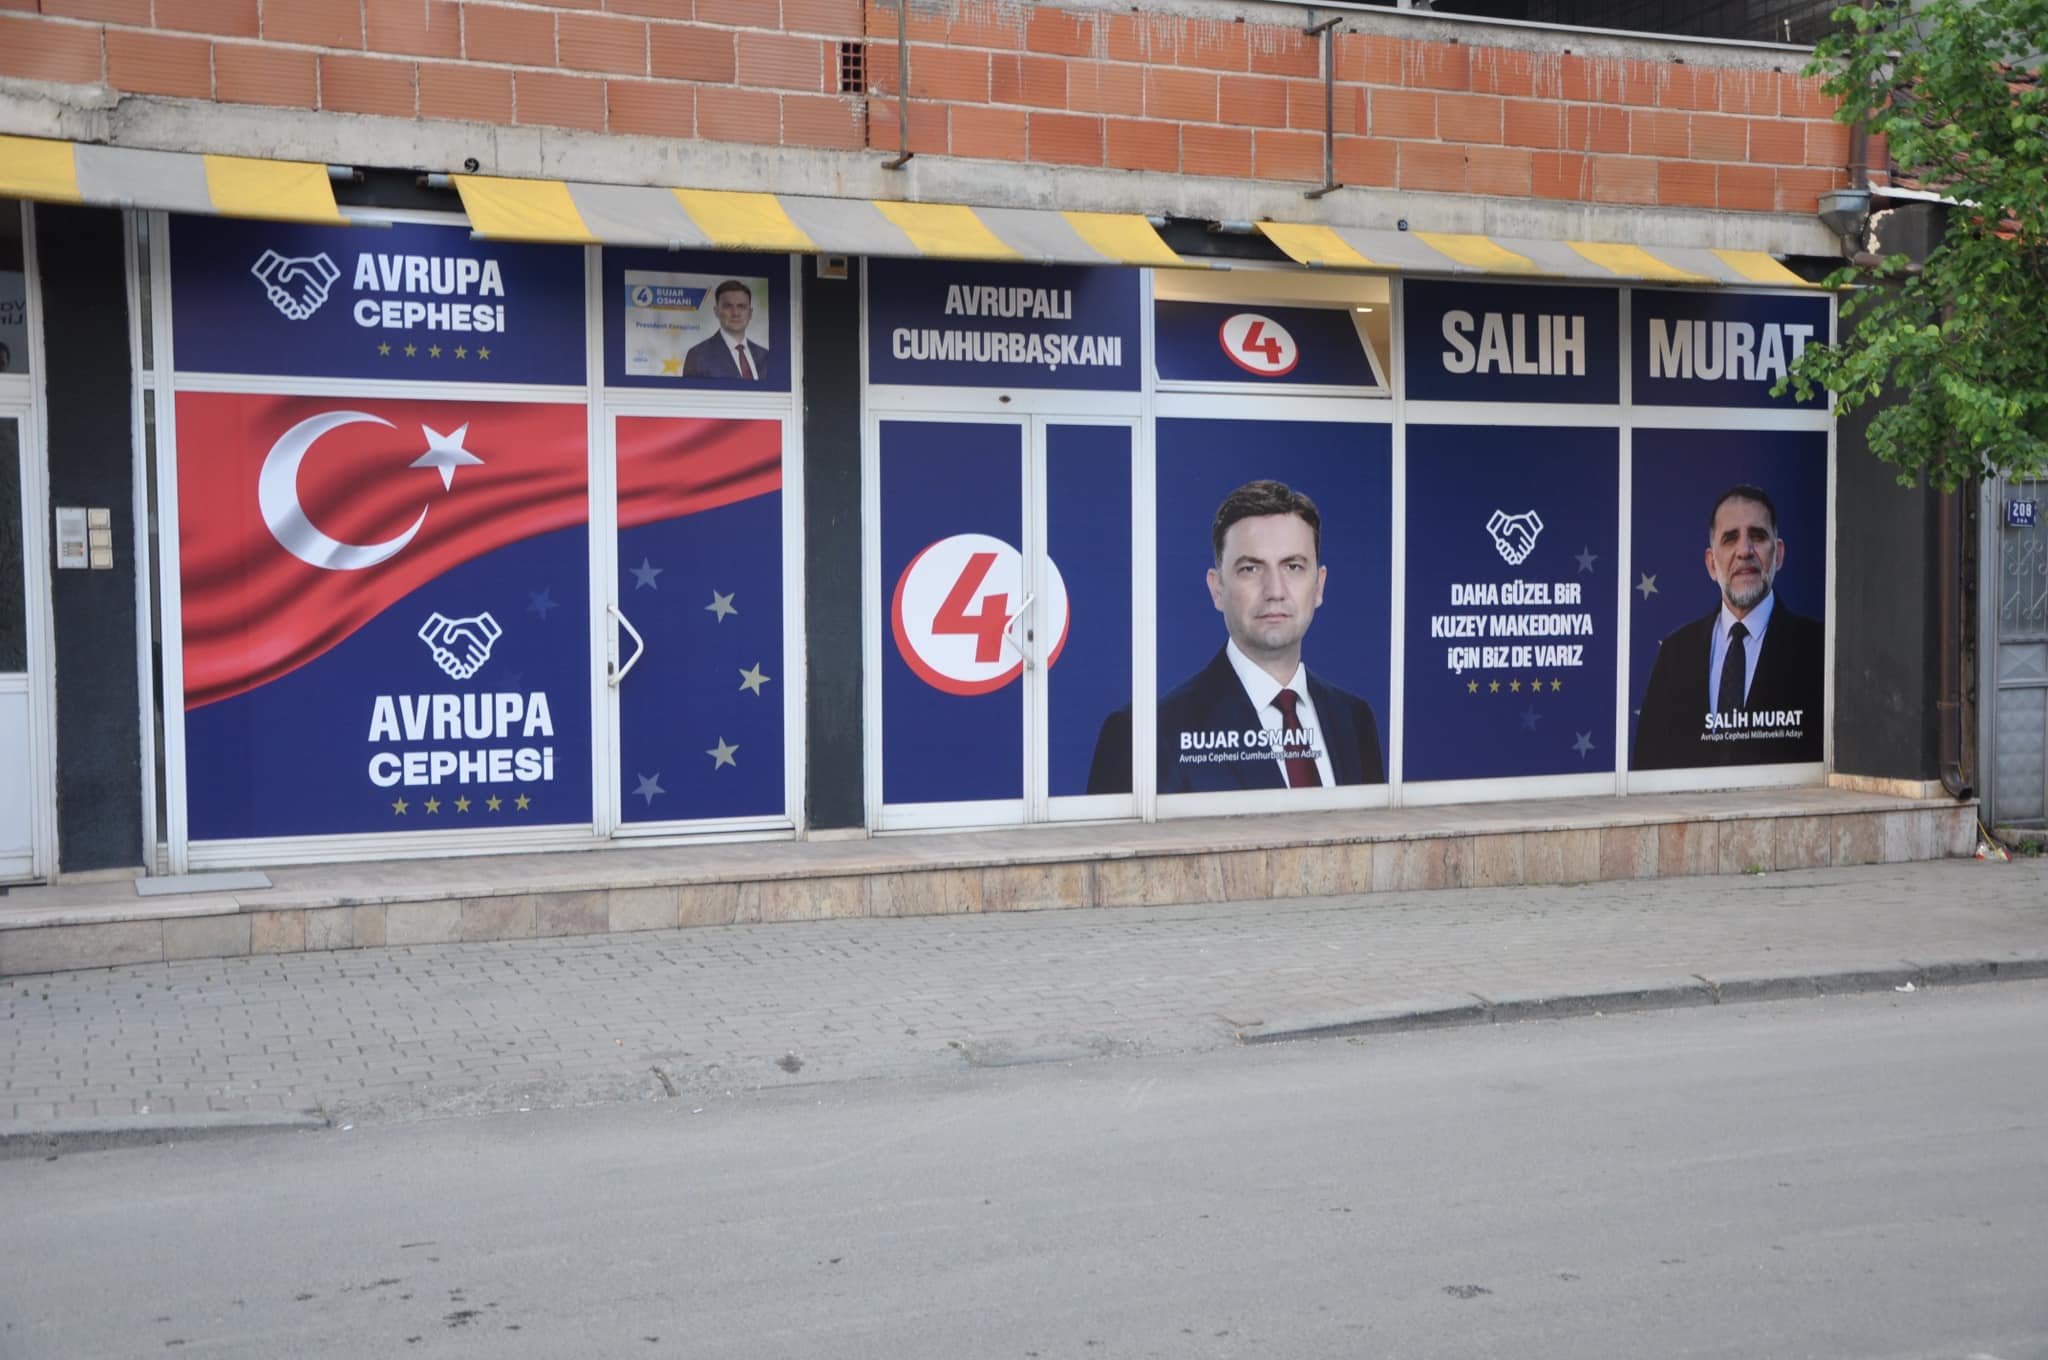 Milletvekili adayı Salih Murat, Gostivar ve Vrapçişte’de seçim ofisi açtı